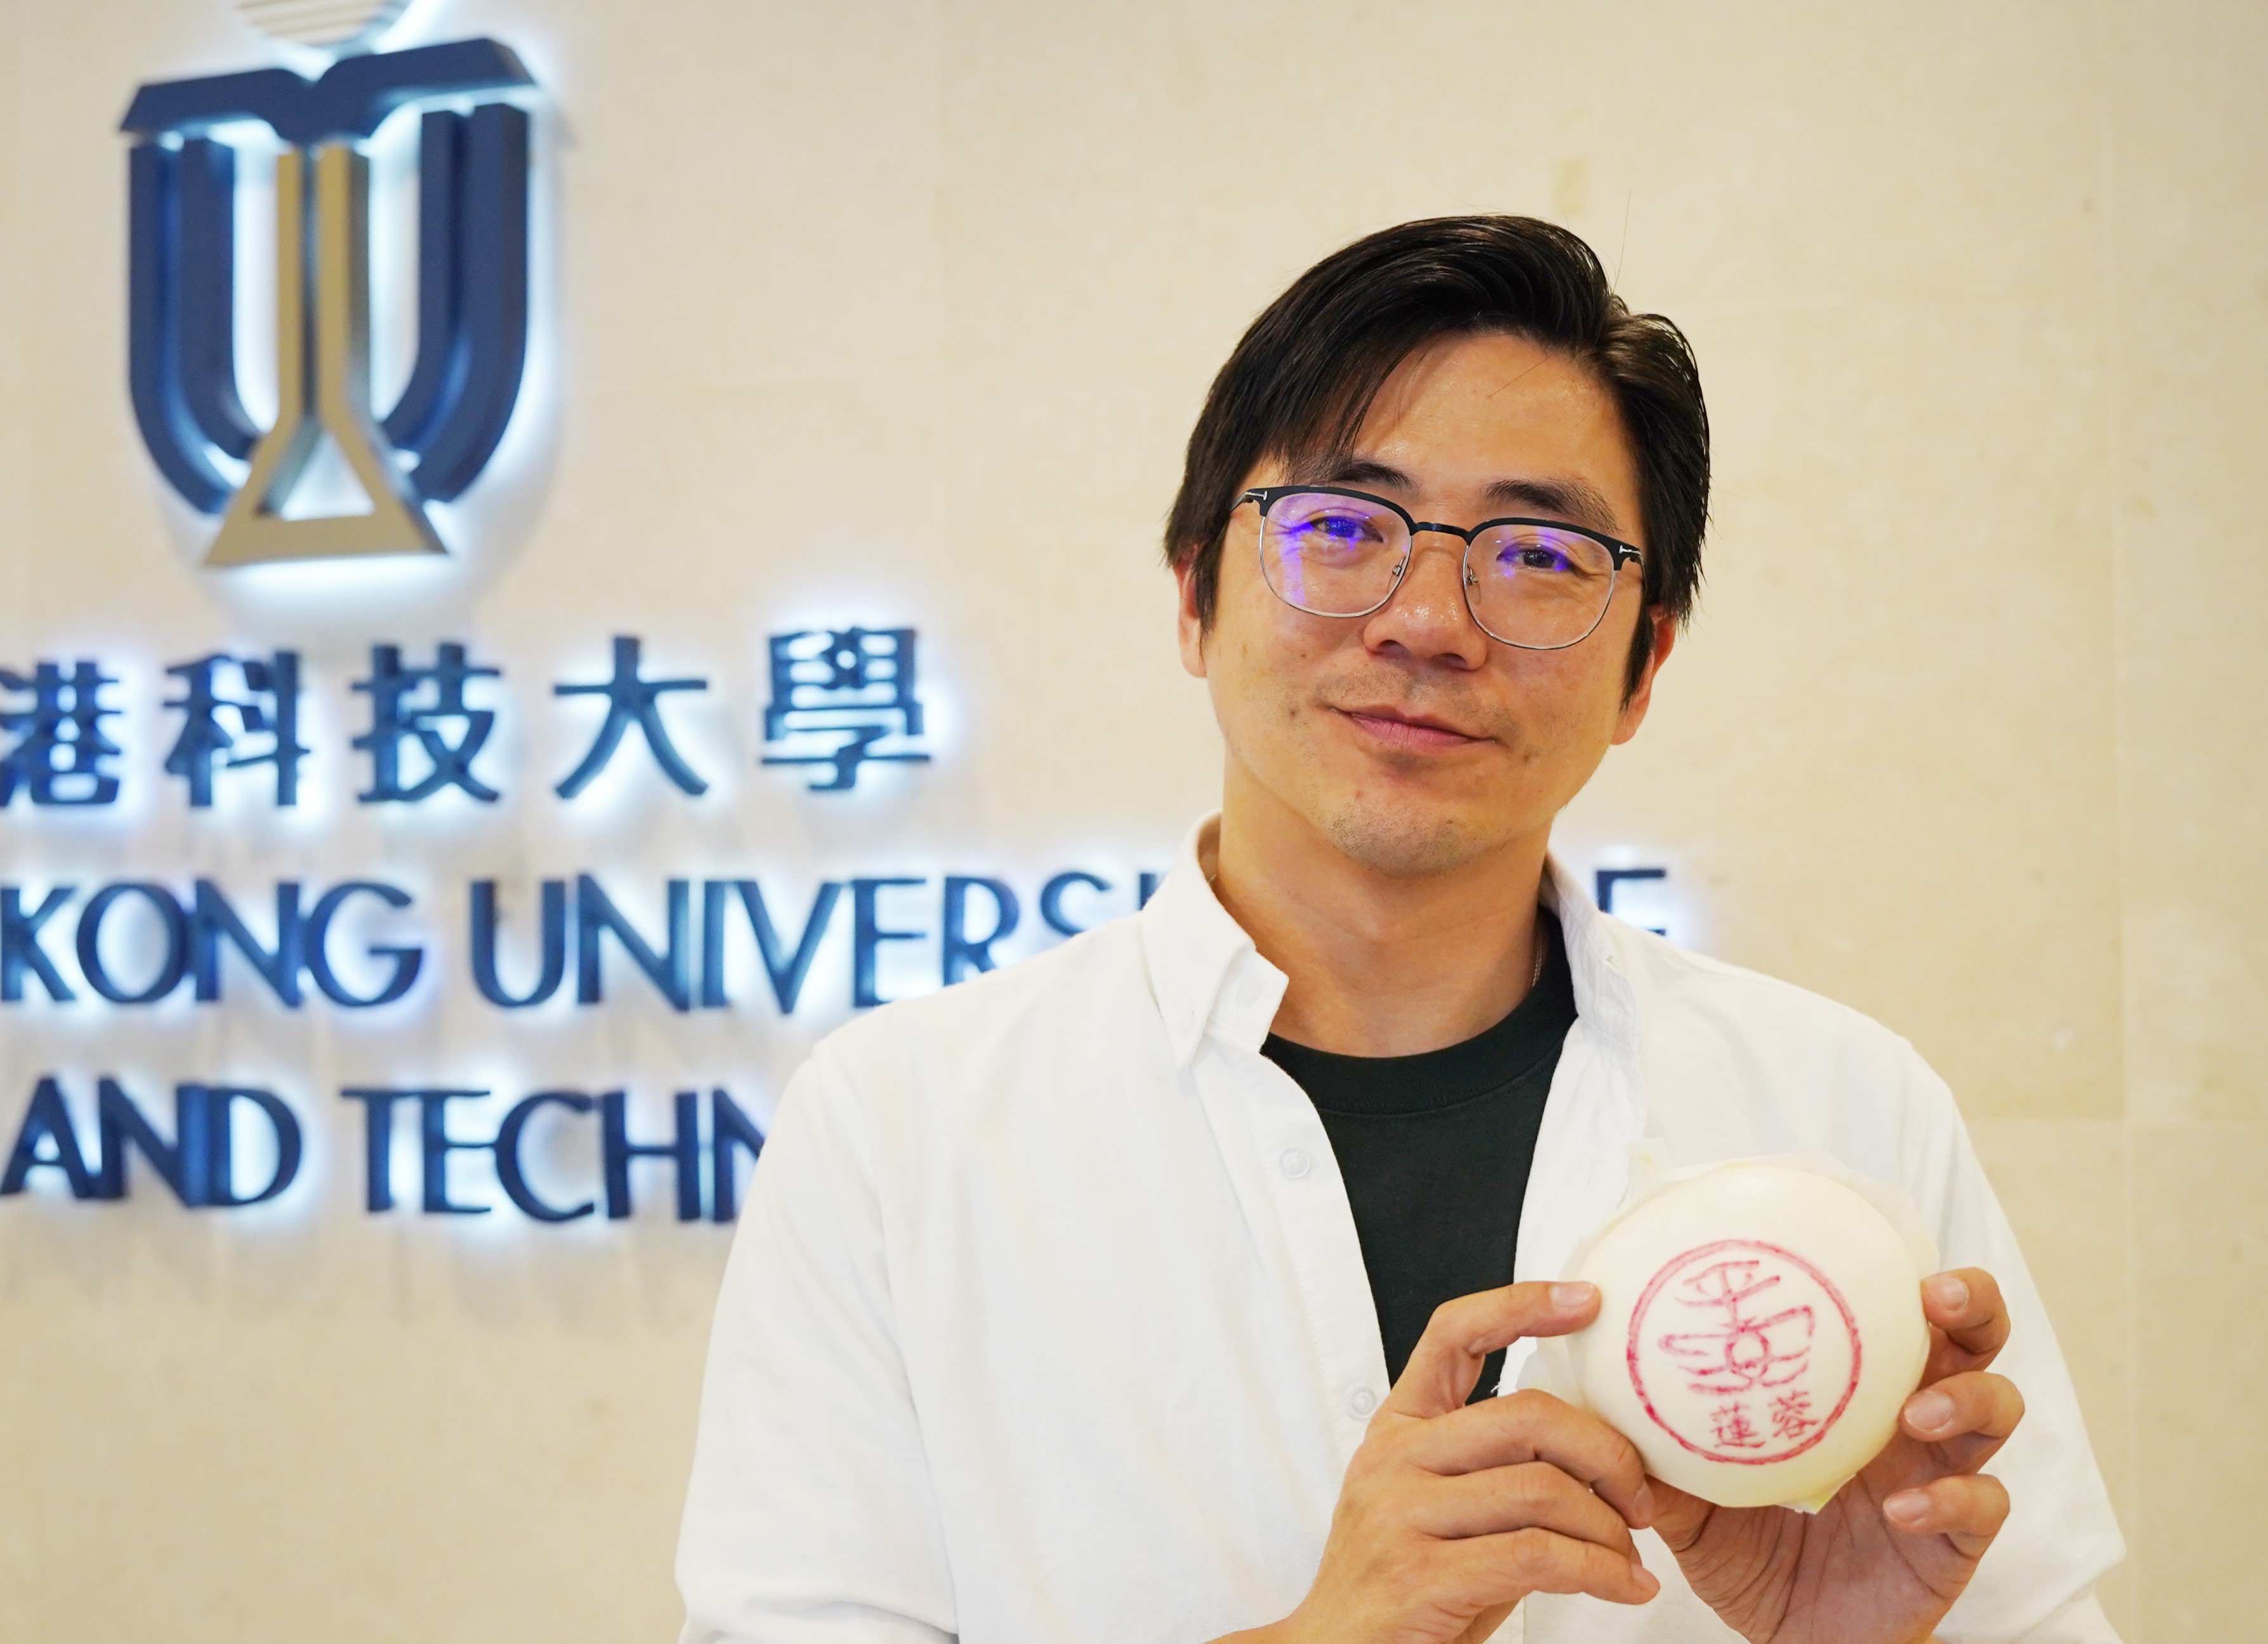 郭宇钿（Martin KWOK）是香港科技大学校友，也是长洲郭锦记饼店的第二代传人。